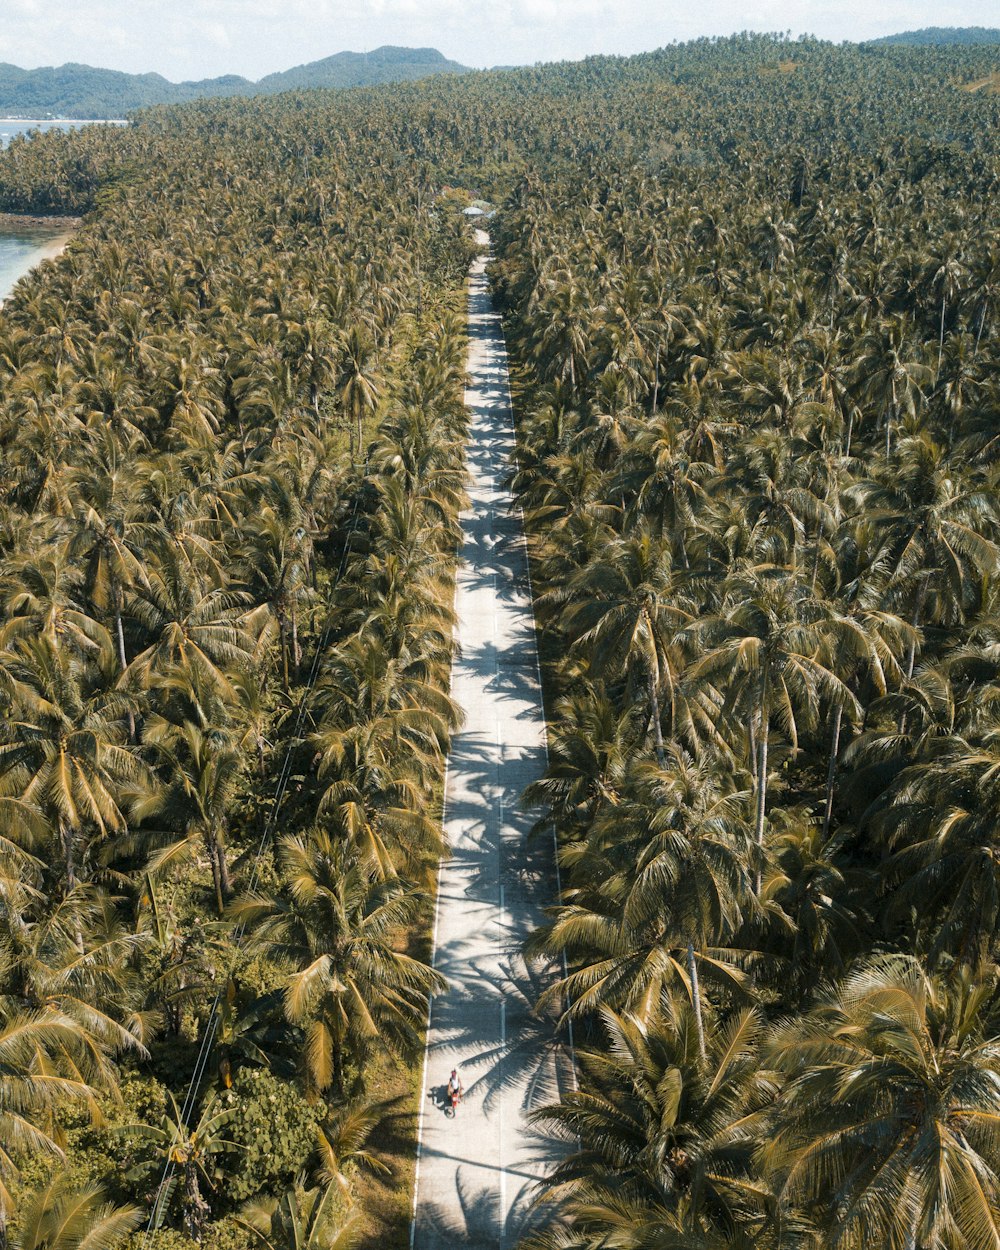 Vista aérea fotografia do coqueiro durante o dia